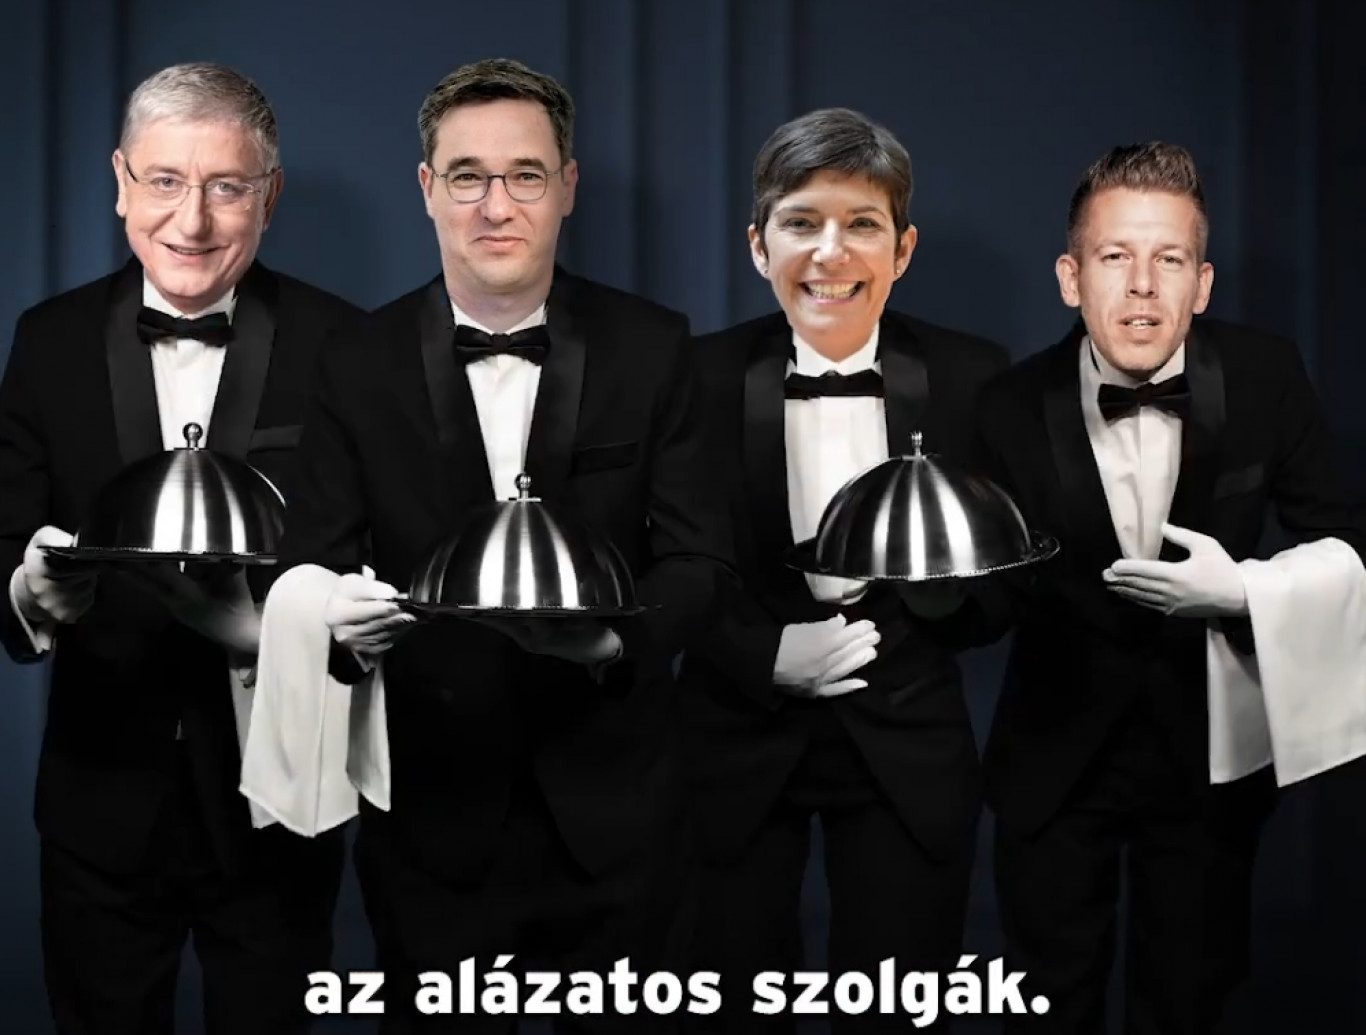 Hát ezeknek meg ki csengetett? Művészi kisfilmben rántja le a leplet a Fidesz...